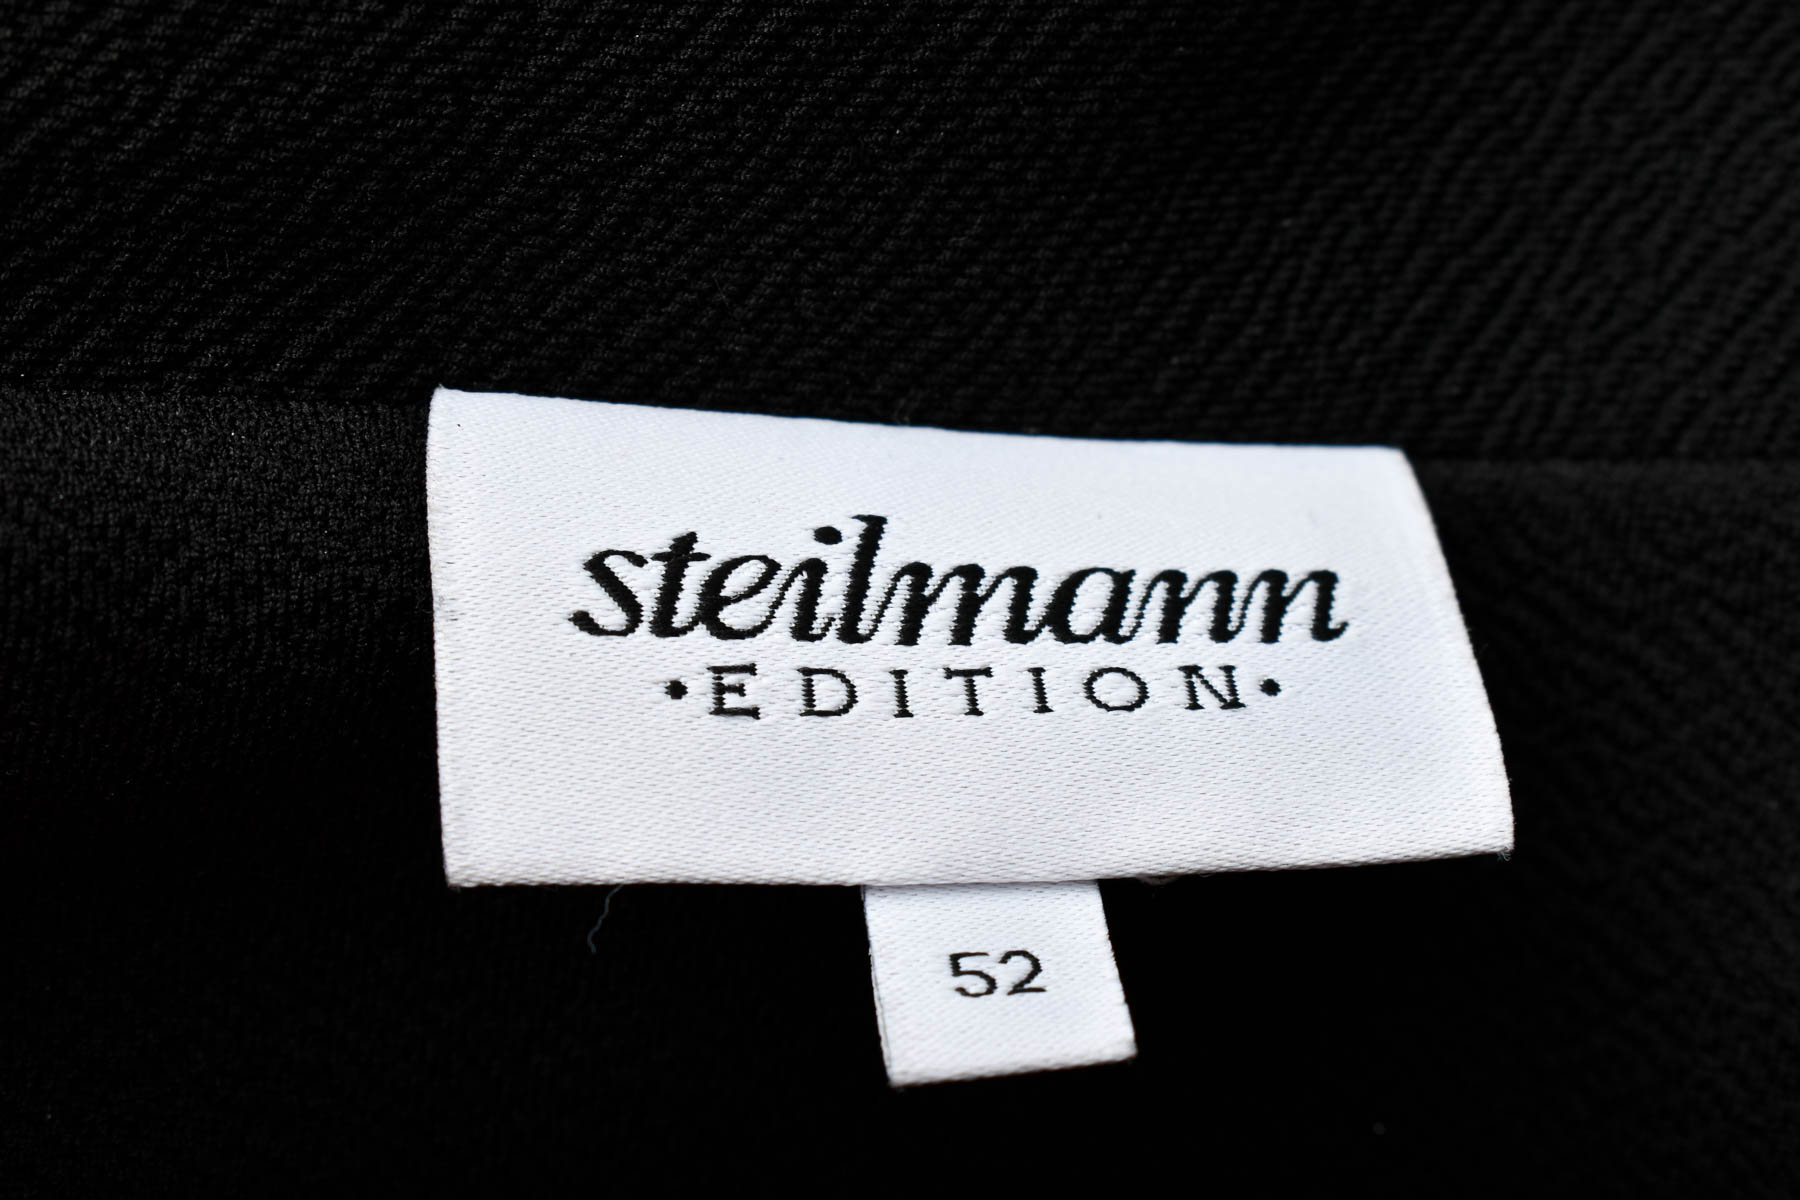 Γυναικείо σακάκι - Steilmann - 2